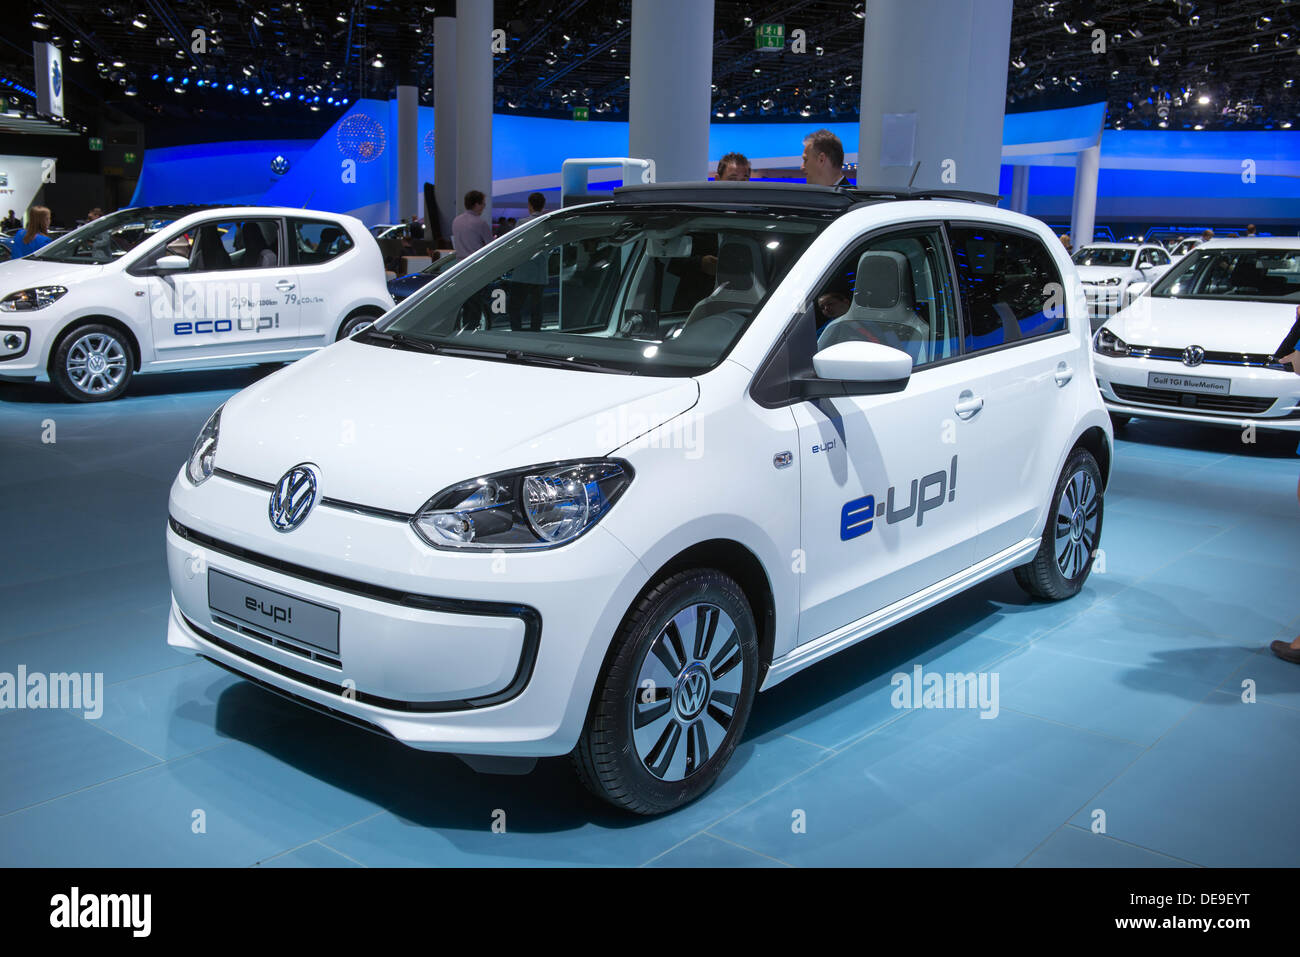 Foto (Bild): VW e-up! - So - genug des Jammerns. Der e-up! Hat